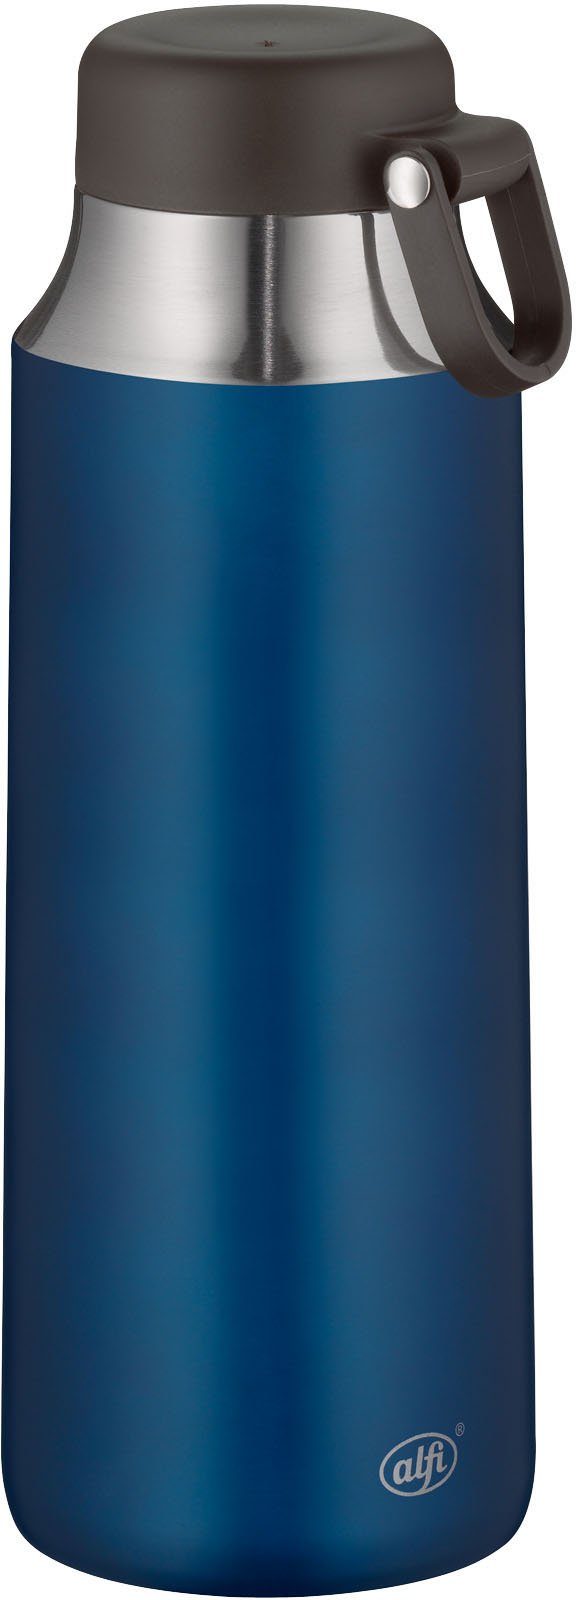 Alfi Thermoflasche Tea Bottle Cityline, Edelstahl, 0,9 Liter, ideal für Tee blau